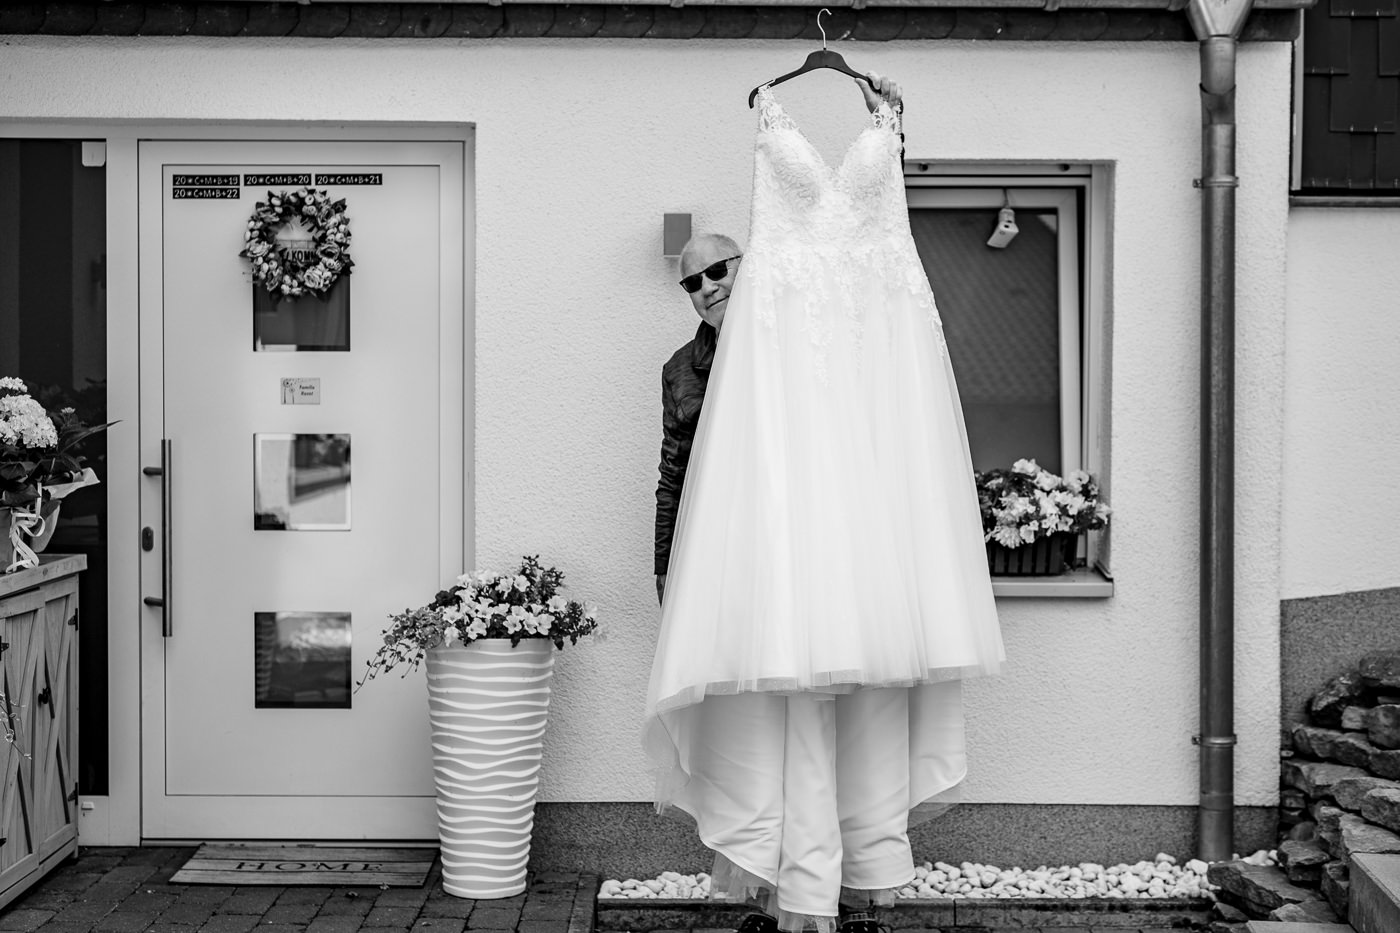 Hochzeitsfotografin-Hagen-Hochzeitsfotograf-Ruhrgebiet-lumoid-Nadine-Lotze-Hagen-Hochzeitsreportage-075a-92-Muelheim-Ruhr-Brautkleid-Getting-Ready-Humor